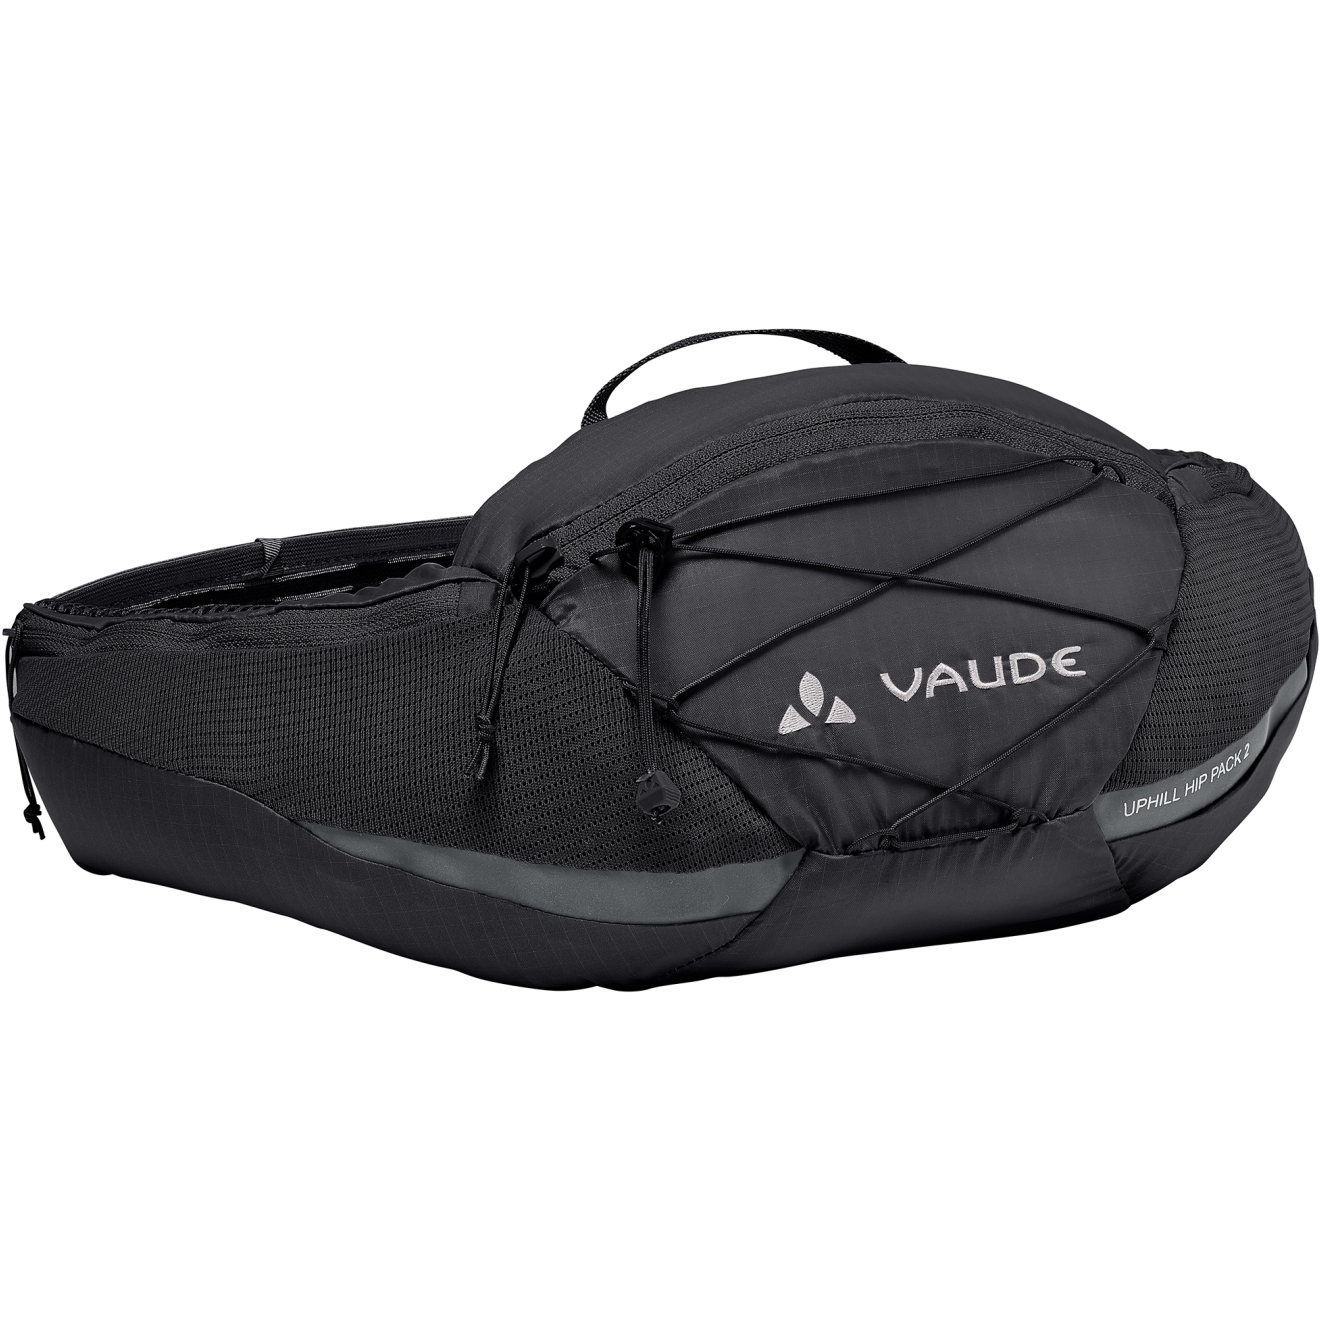 Produktbild von Vaude Uphill Hüfttasche 2L - schwarz